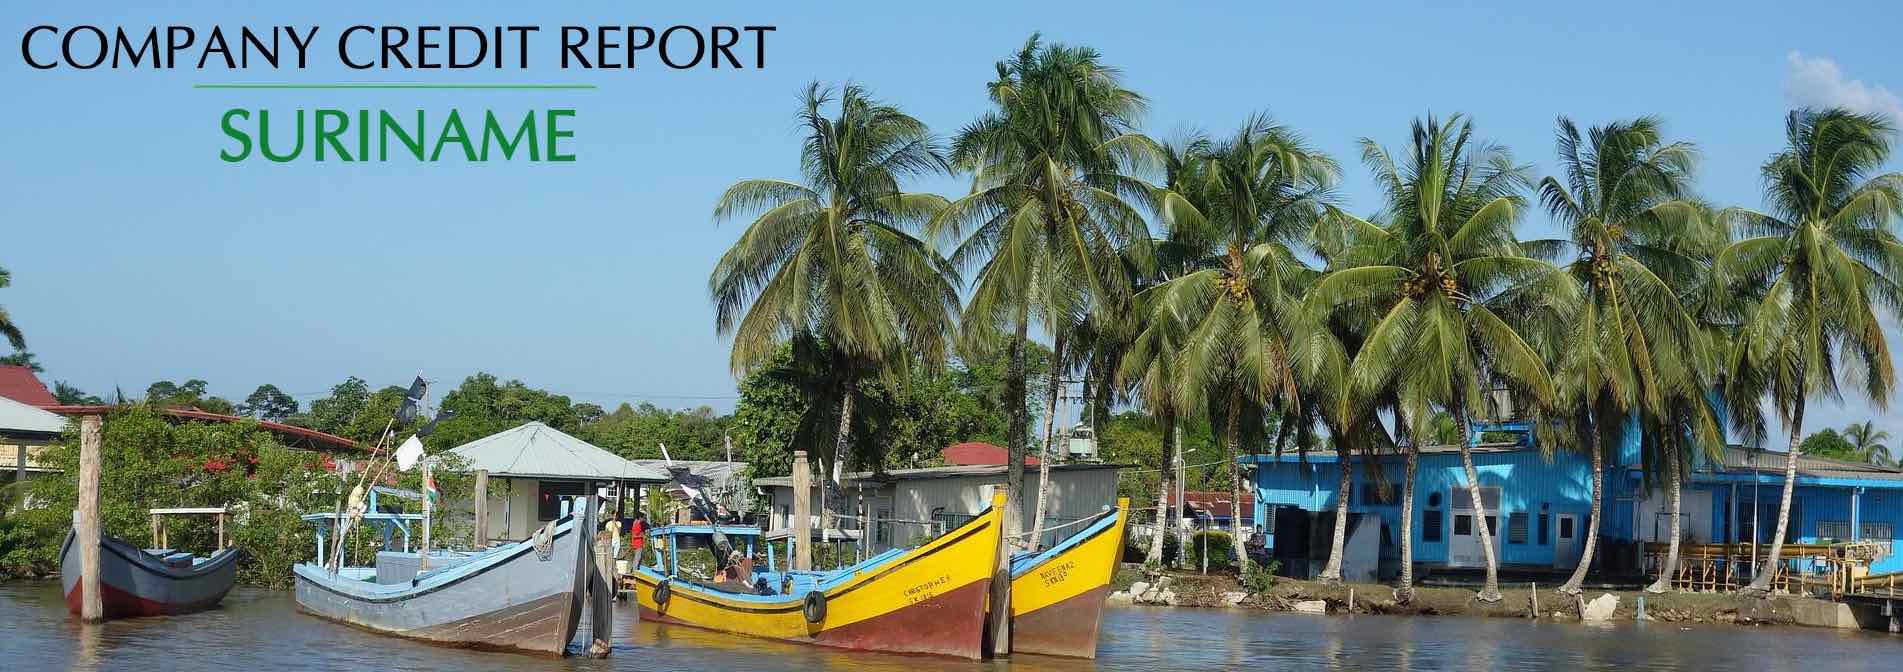 Suriname Company Credit Report